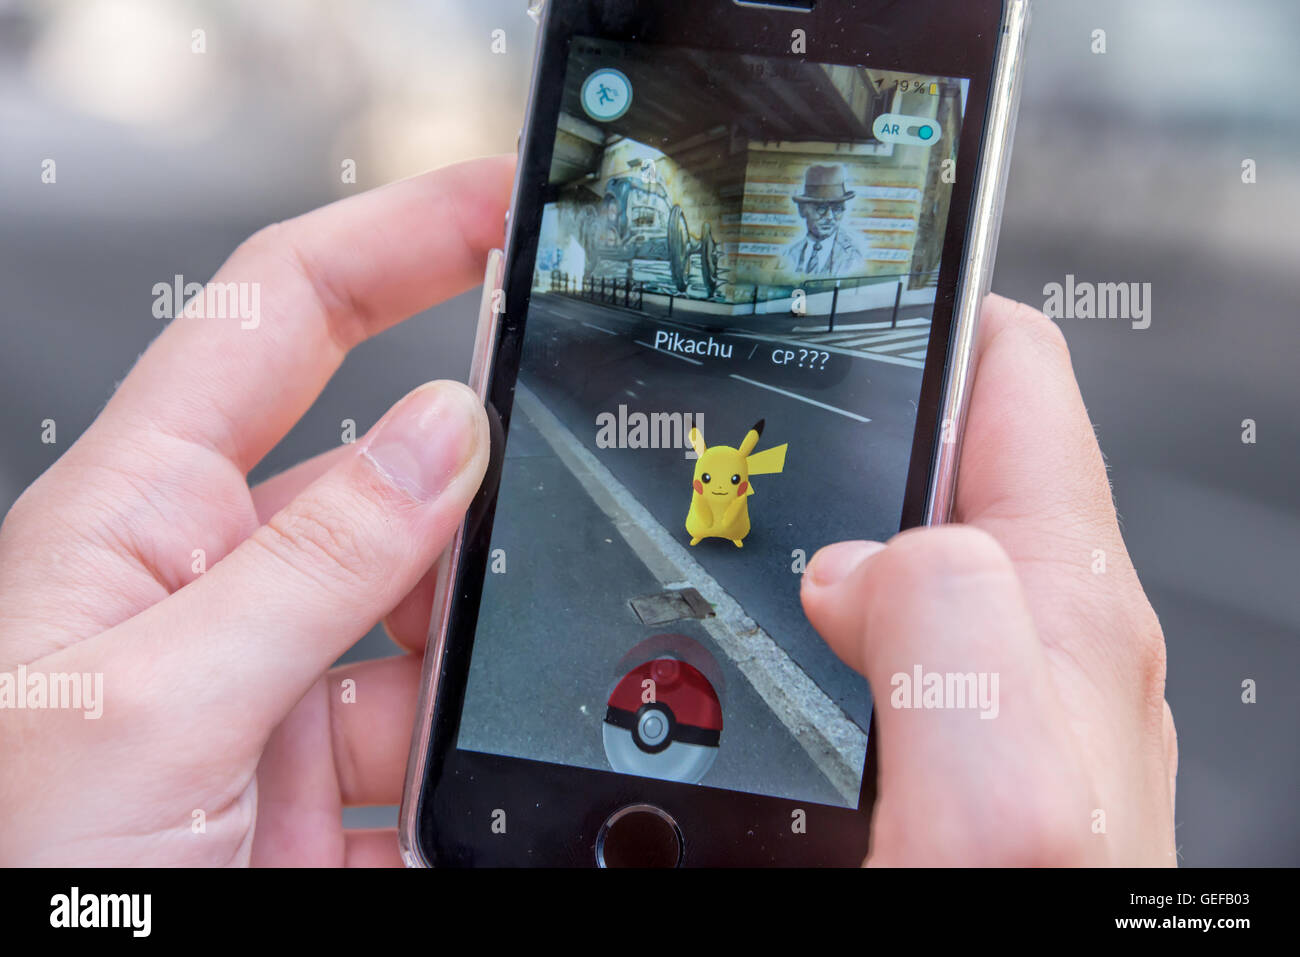 CHAVILLE, Francia - 24 de julio: Apple iPhone5s con Pikachu de Pokemon ir aplicaciones, las manos de un adolescente jugando en la primera da Foto de stock